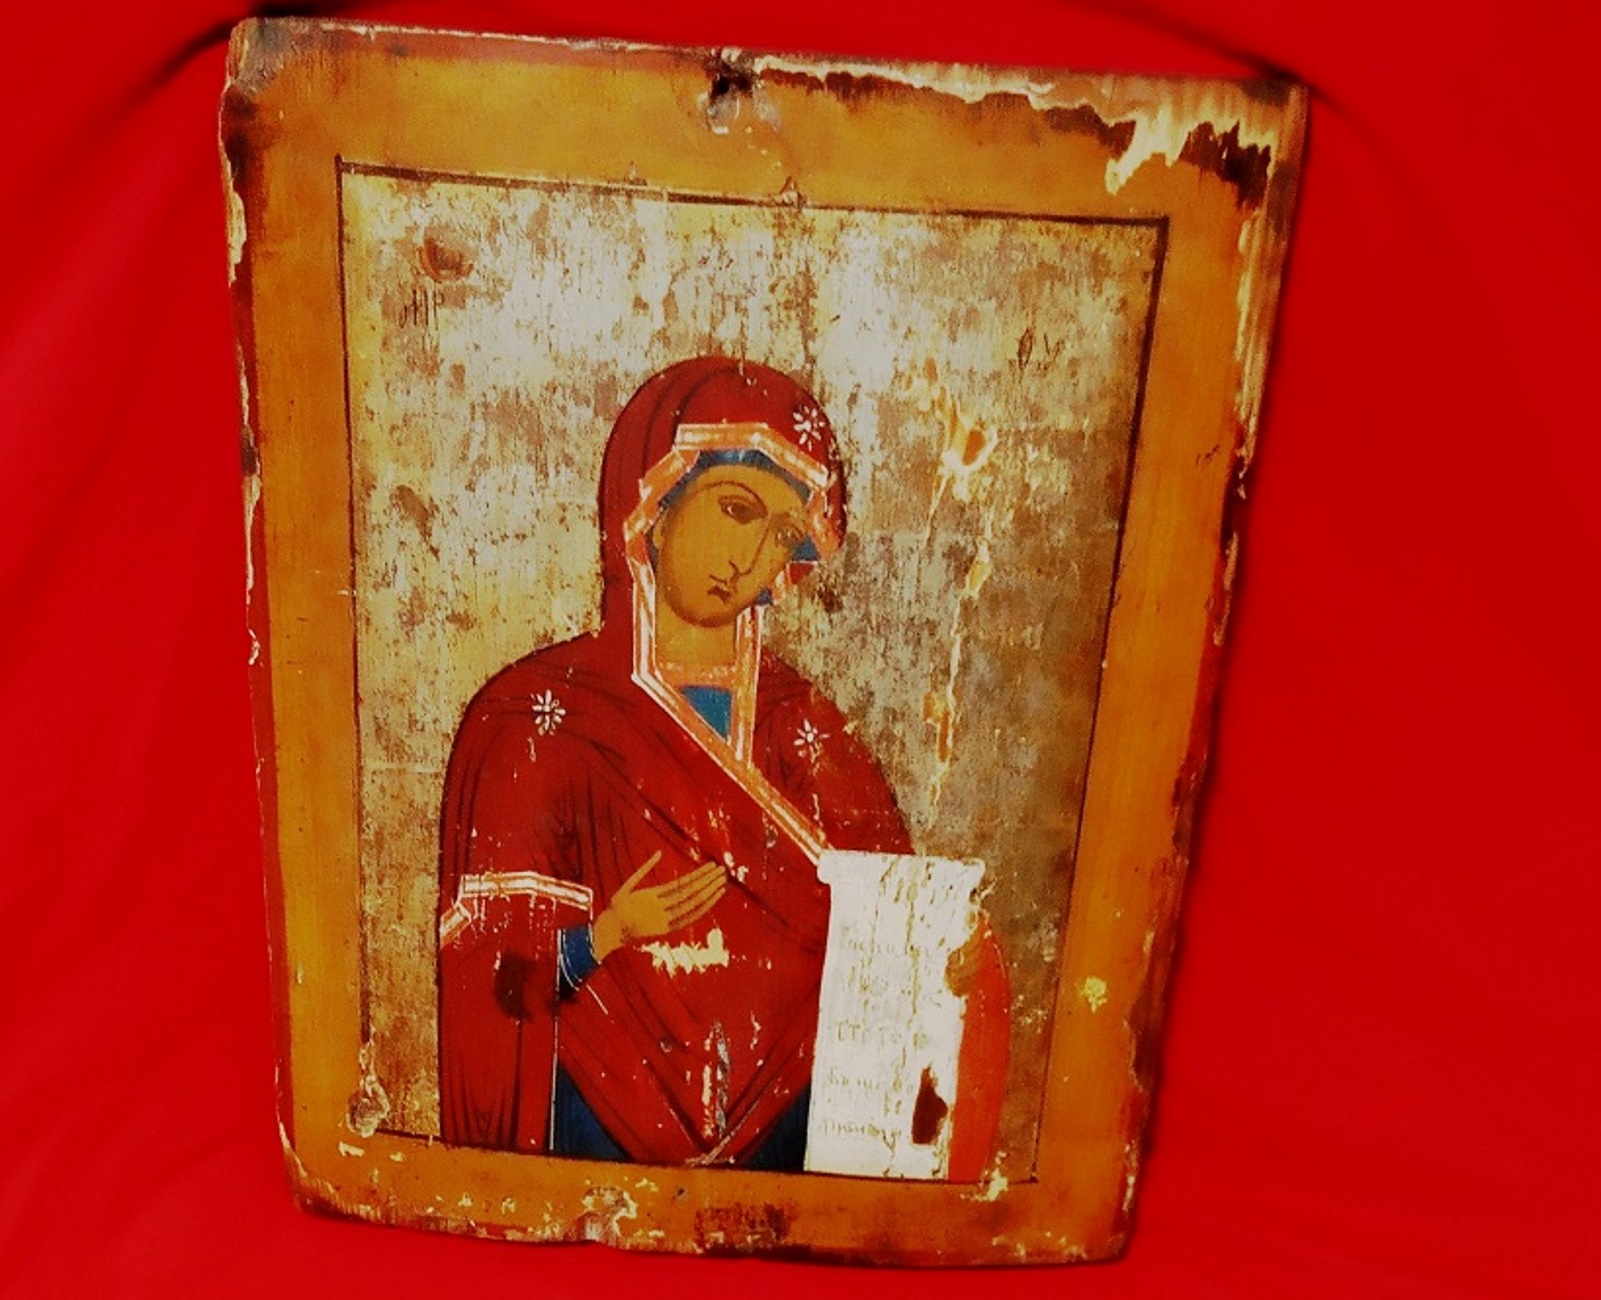 Θεσσαλονίκη: Η εικόνα της Παναγίας τον στέλνει στον εισαγγελέα – Σε περιπέτειες ο παλαιοπώλης!